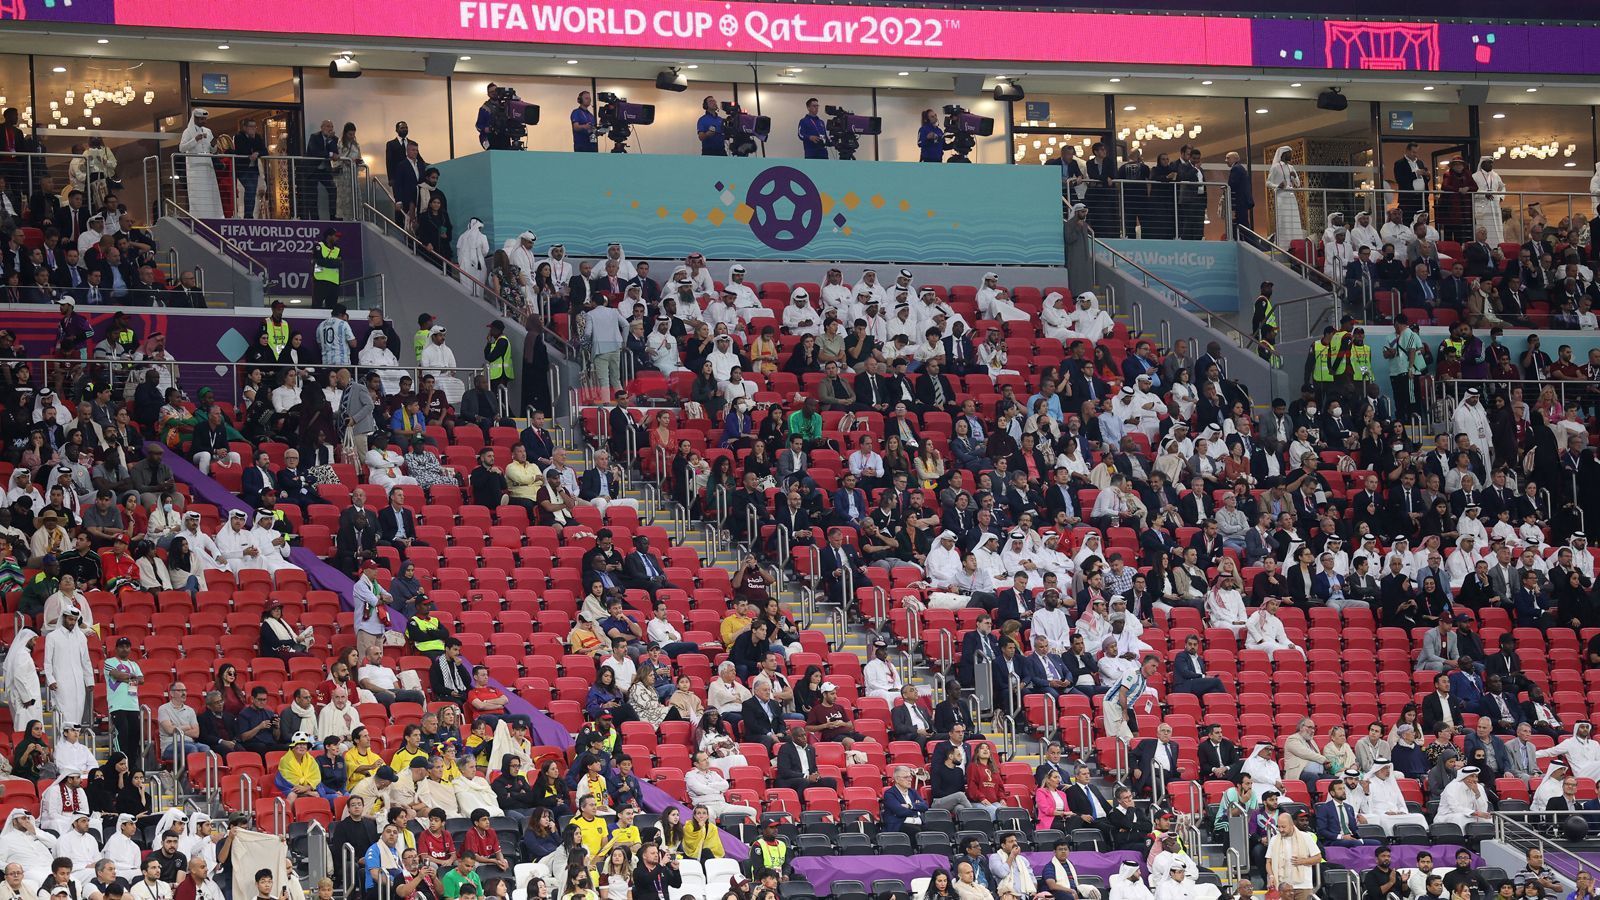 
                <strong>Mangelnde Fankultur in Katar</strong><br>
                Ein möglicher Grund für die ziemlich radikale Reaktion der Fans: Im Gastgeberland Katar herrscht nahezu keine Fußball-Fankultur. Somit ist fraglich, inwiefern die Einheimischen sich für die Spiele ihres Teams überhaupt wirklich interessieren. Waren viele von ihnen vielleicht nur mal zum Reinschnuppern im Stadion, ohne womöglich überhaupt alle Fußballregeln zu beherrschen?
              